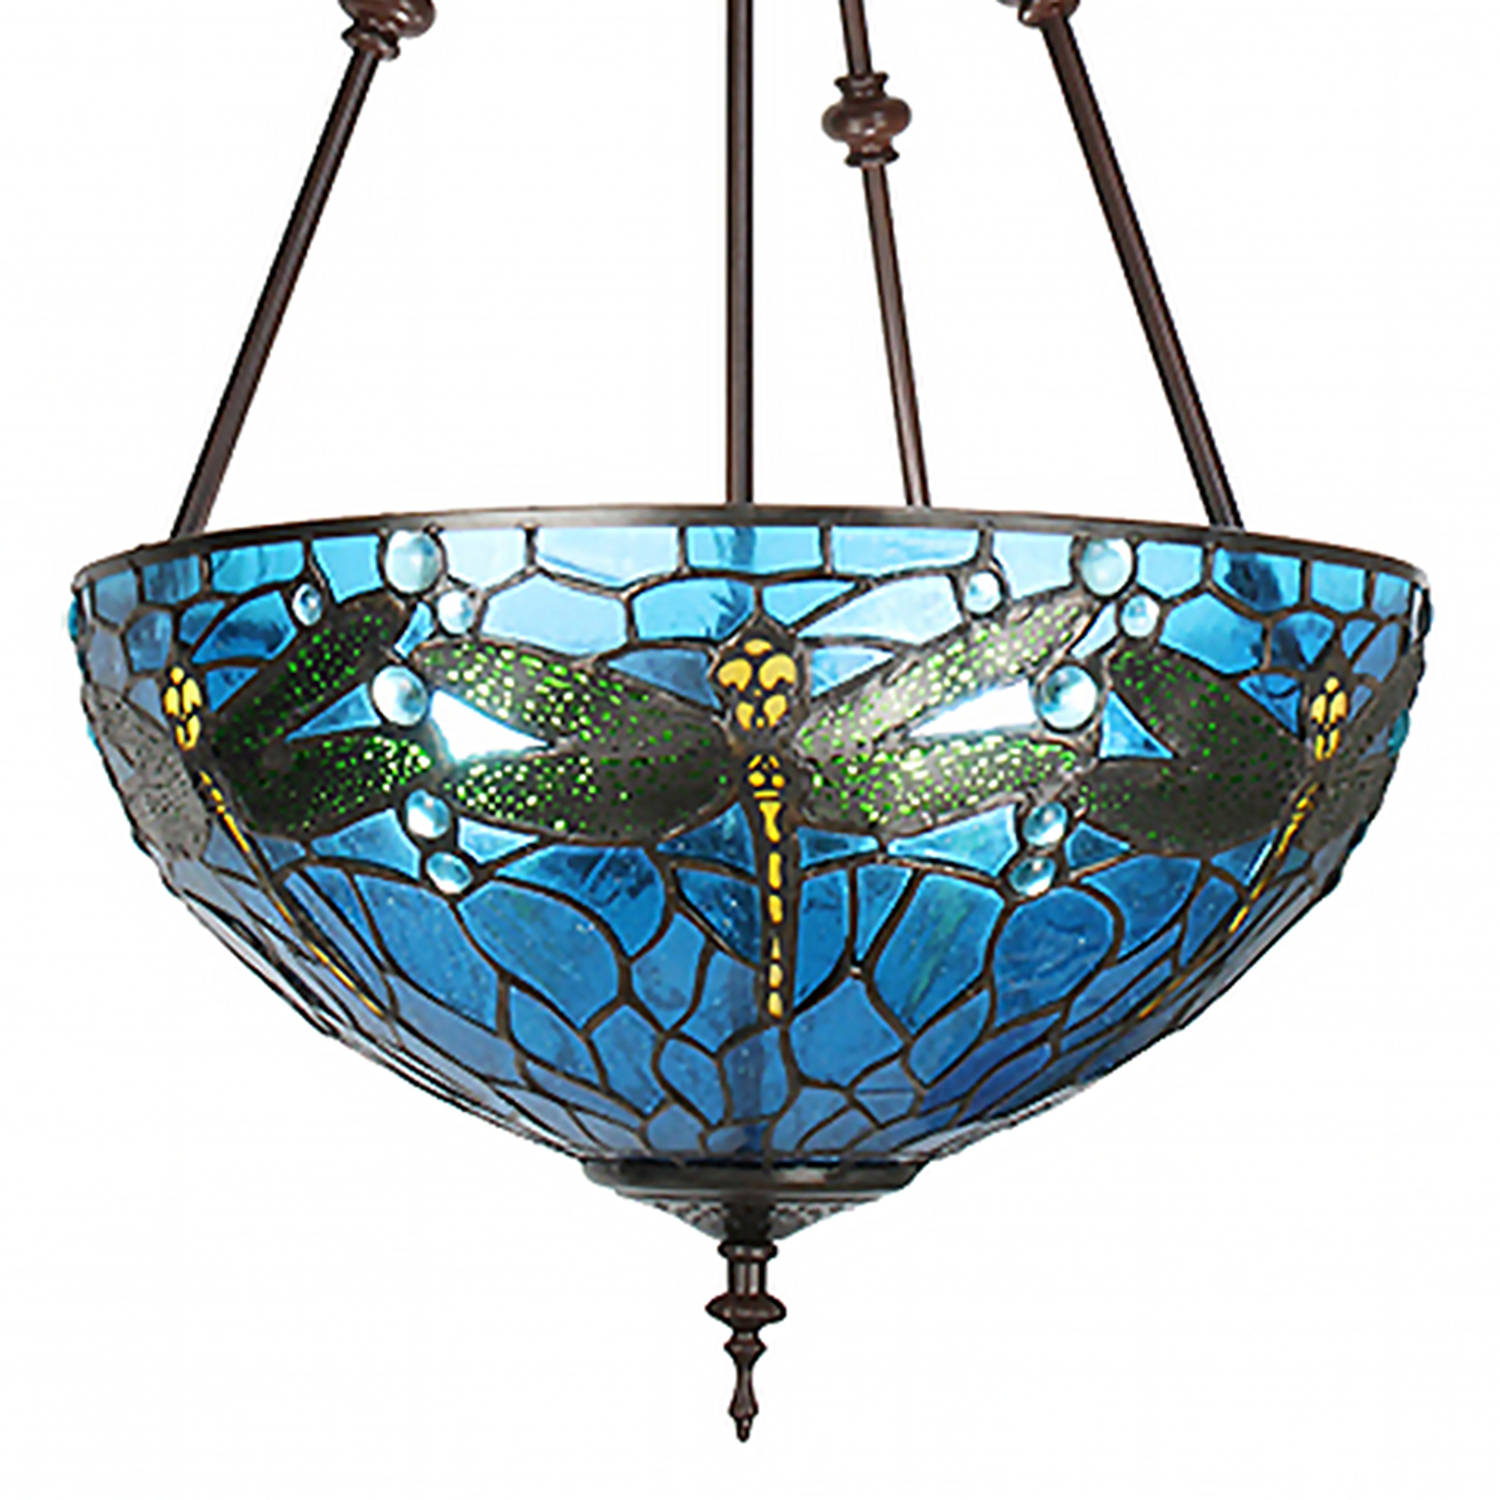 HAES DECO - Tiffany Hanglamp Ø 41x170cm Blauw Groen Metaal Glas Libelle Hanglamp Eettafel Hanglampen Eetkamer Glas in Lood